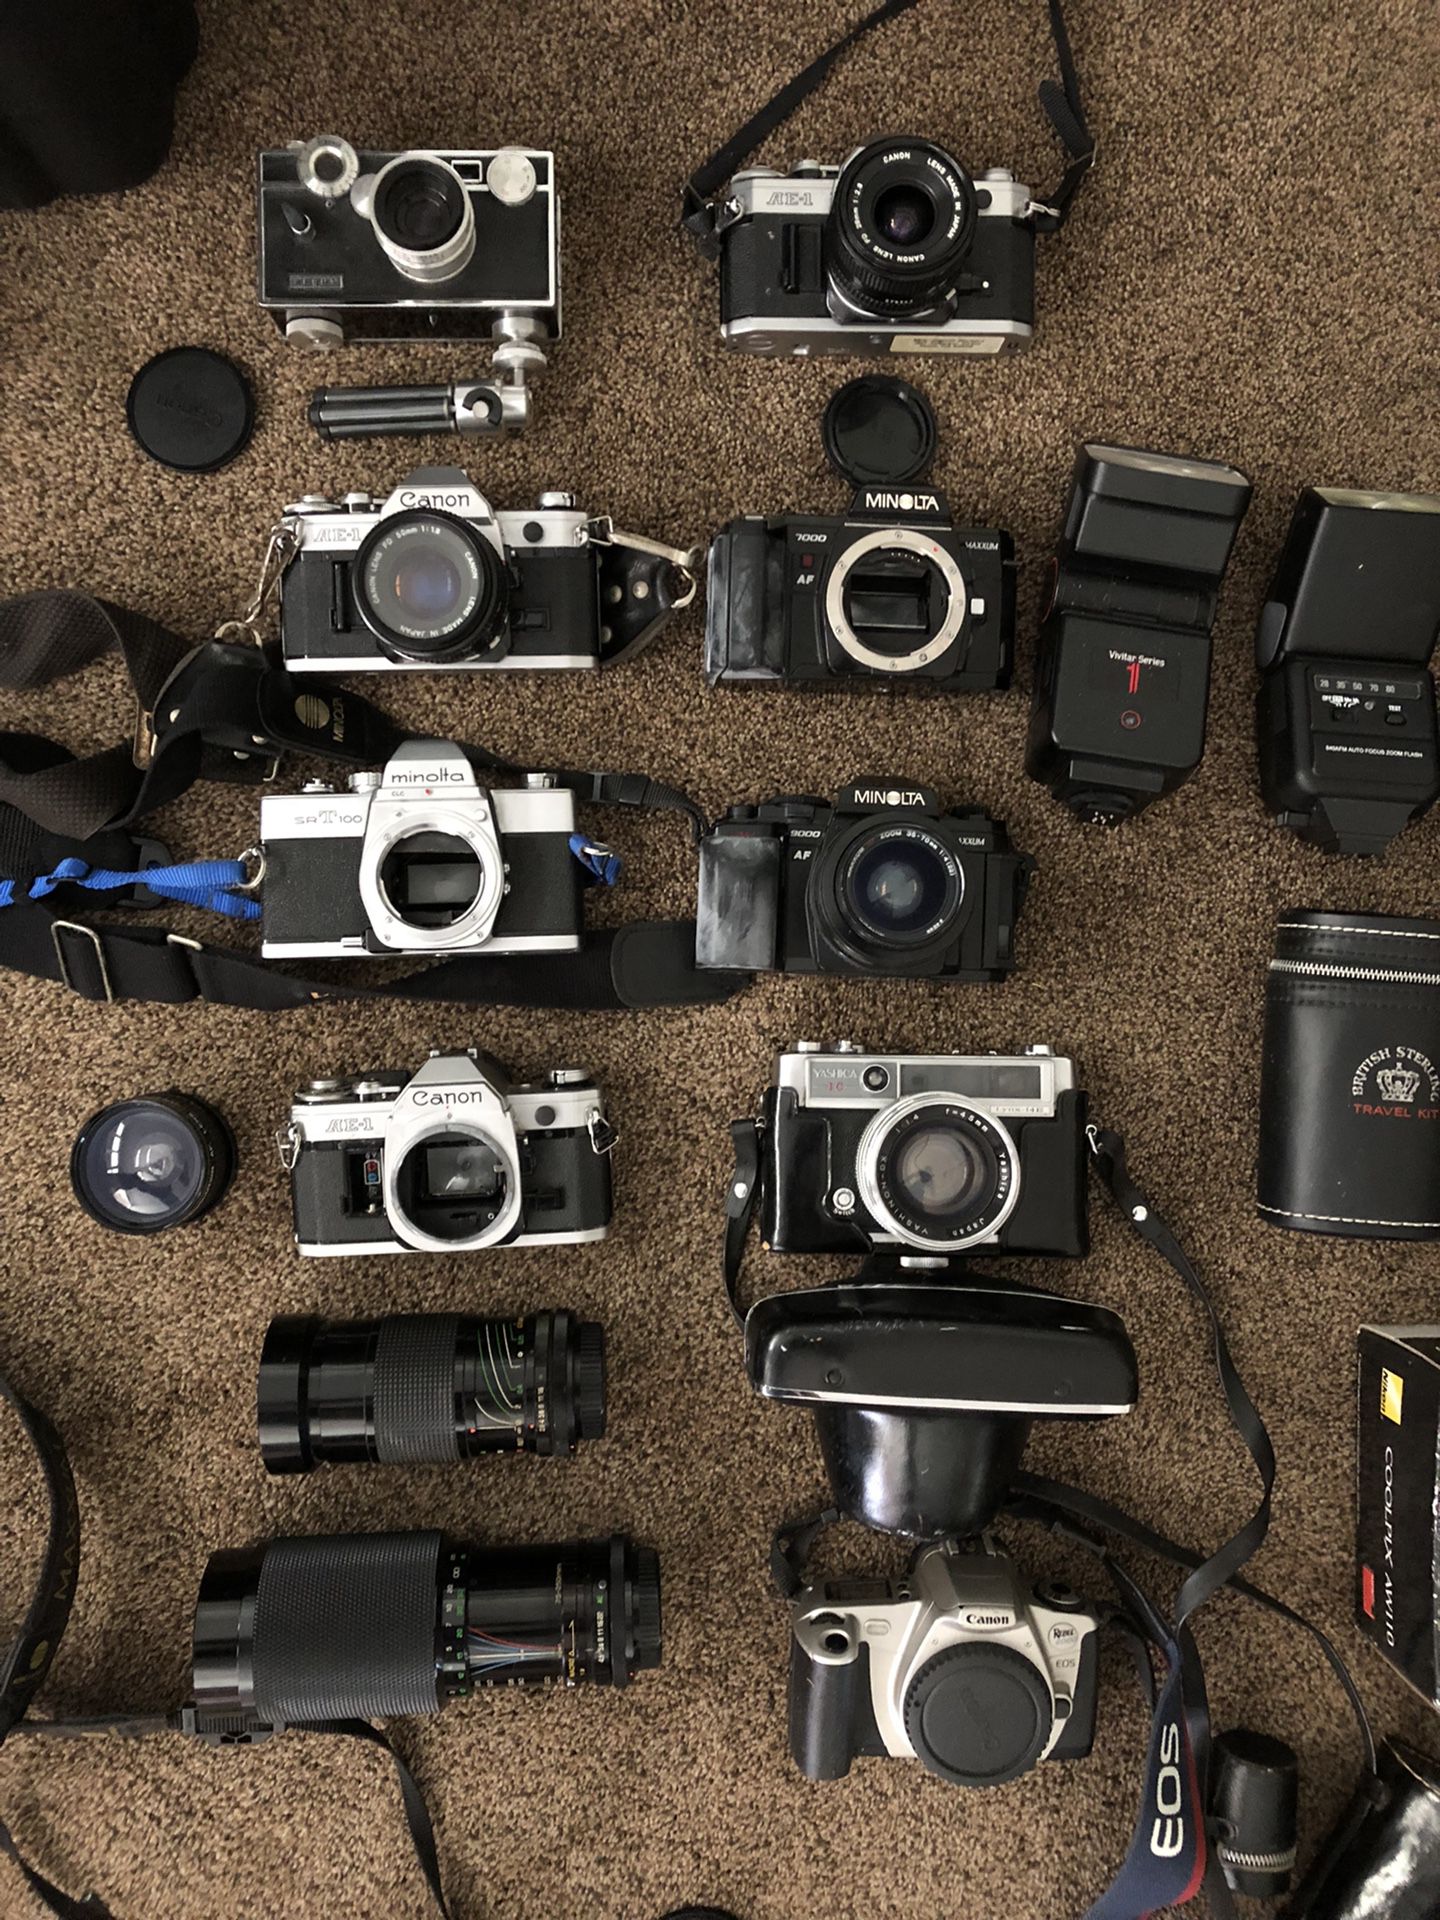 Vintage Cameras, Canon, Minolta, & More